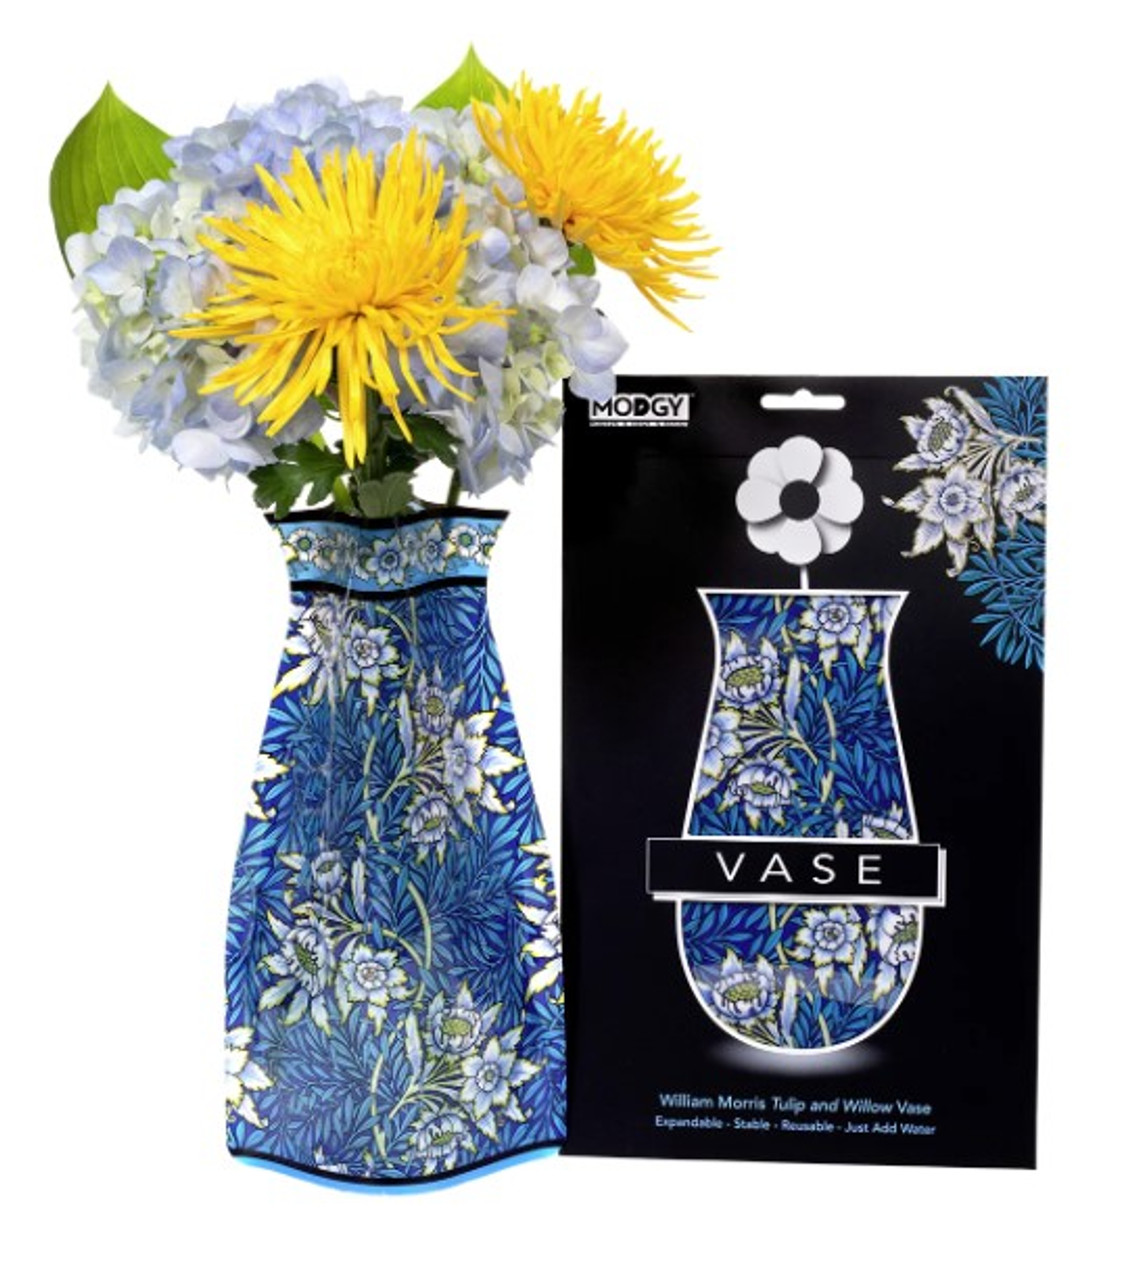 William Morris Tulip & Willow expandable vase